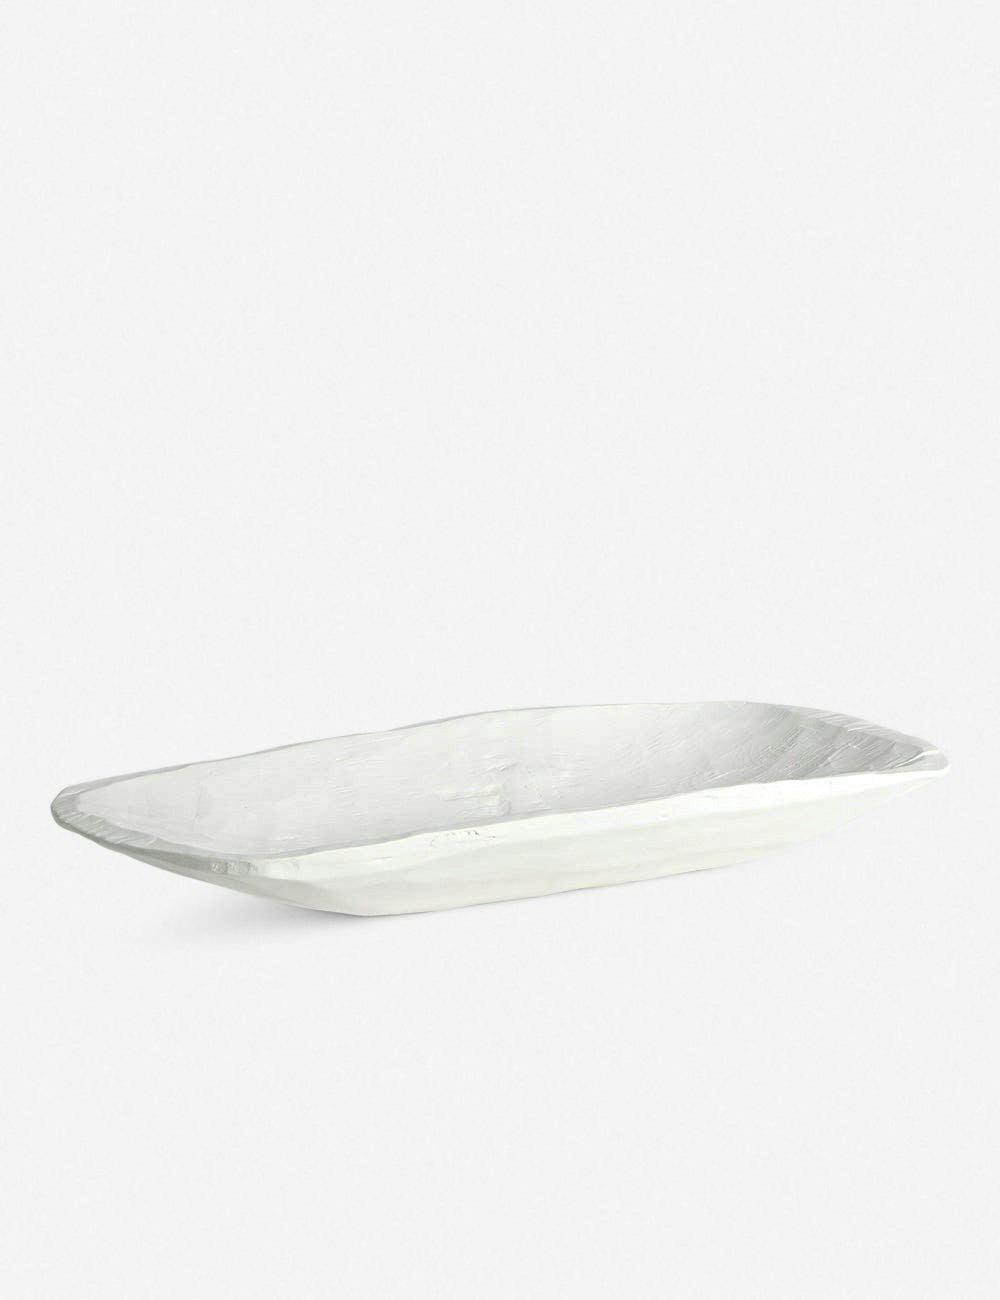 Elegance in Matte White: Faux Timber Rectangular Centerpiece Bowl